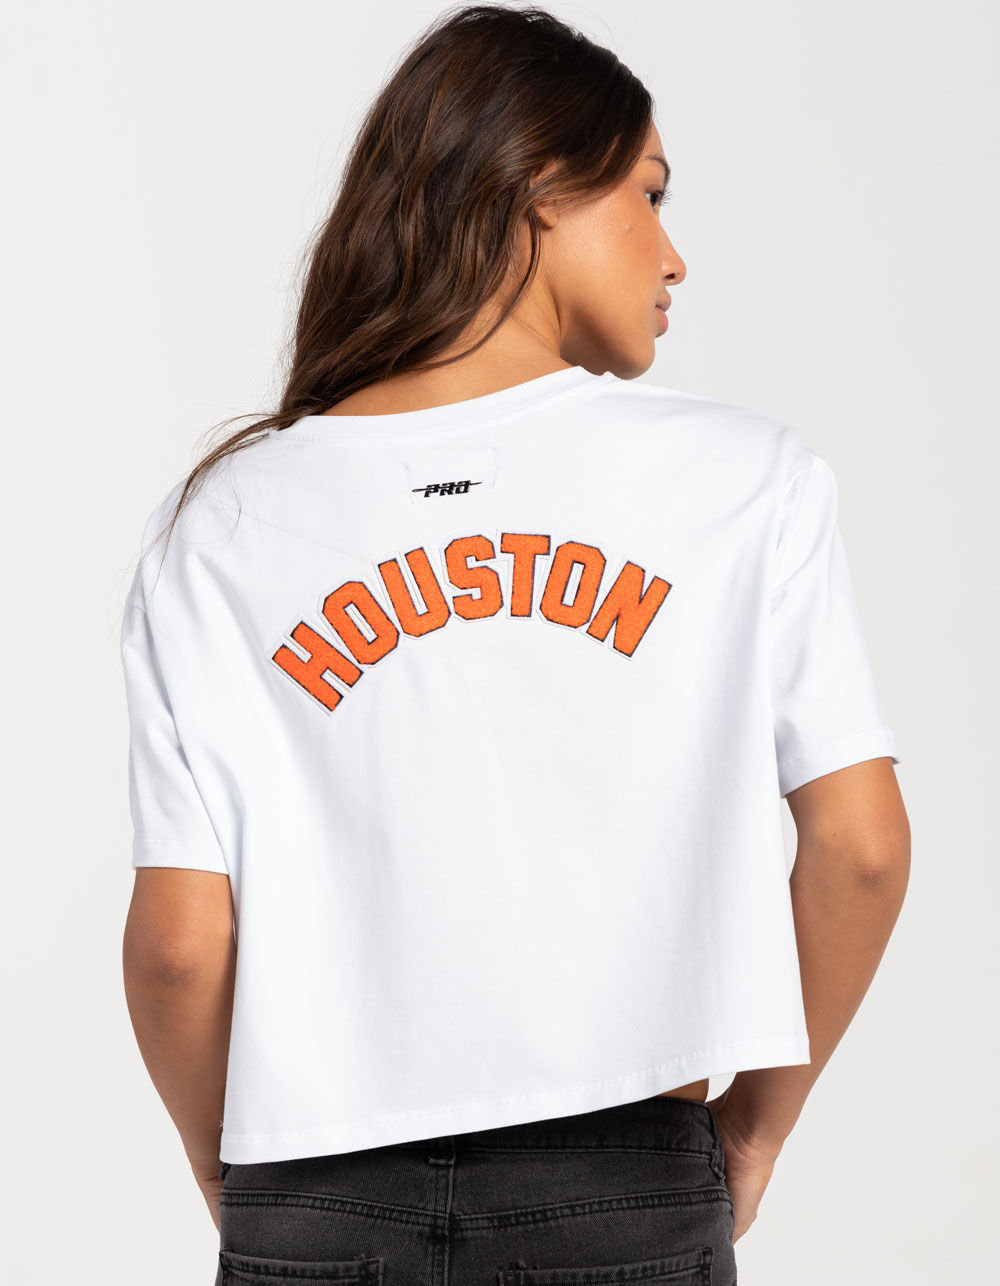 Girls Youth New Era Pink Houston Astros Jersey Stars V-Neck T-Shirt